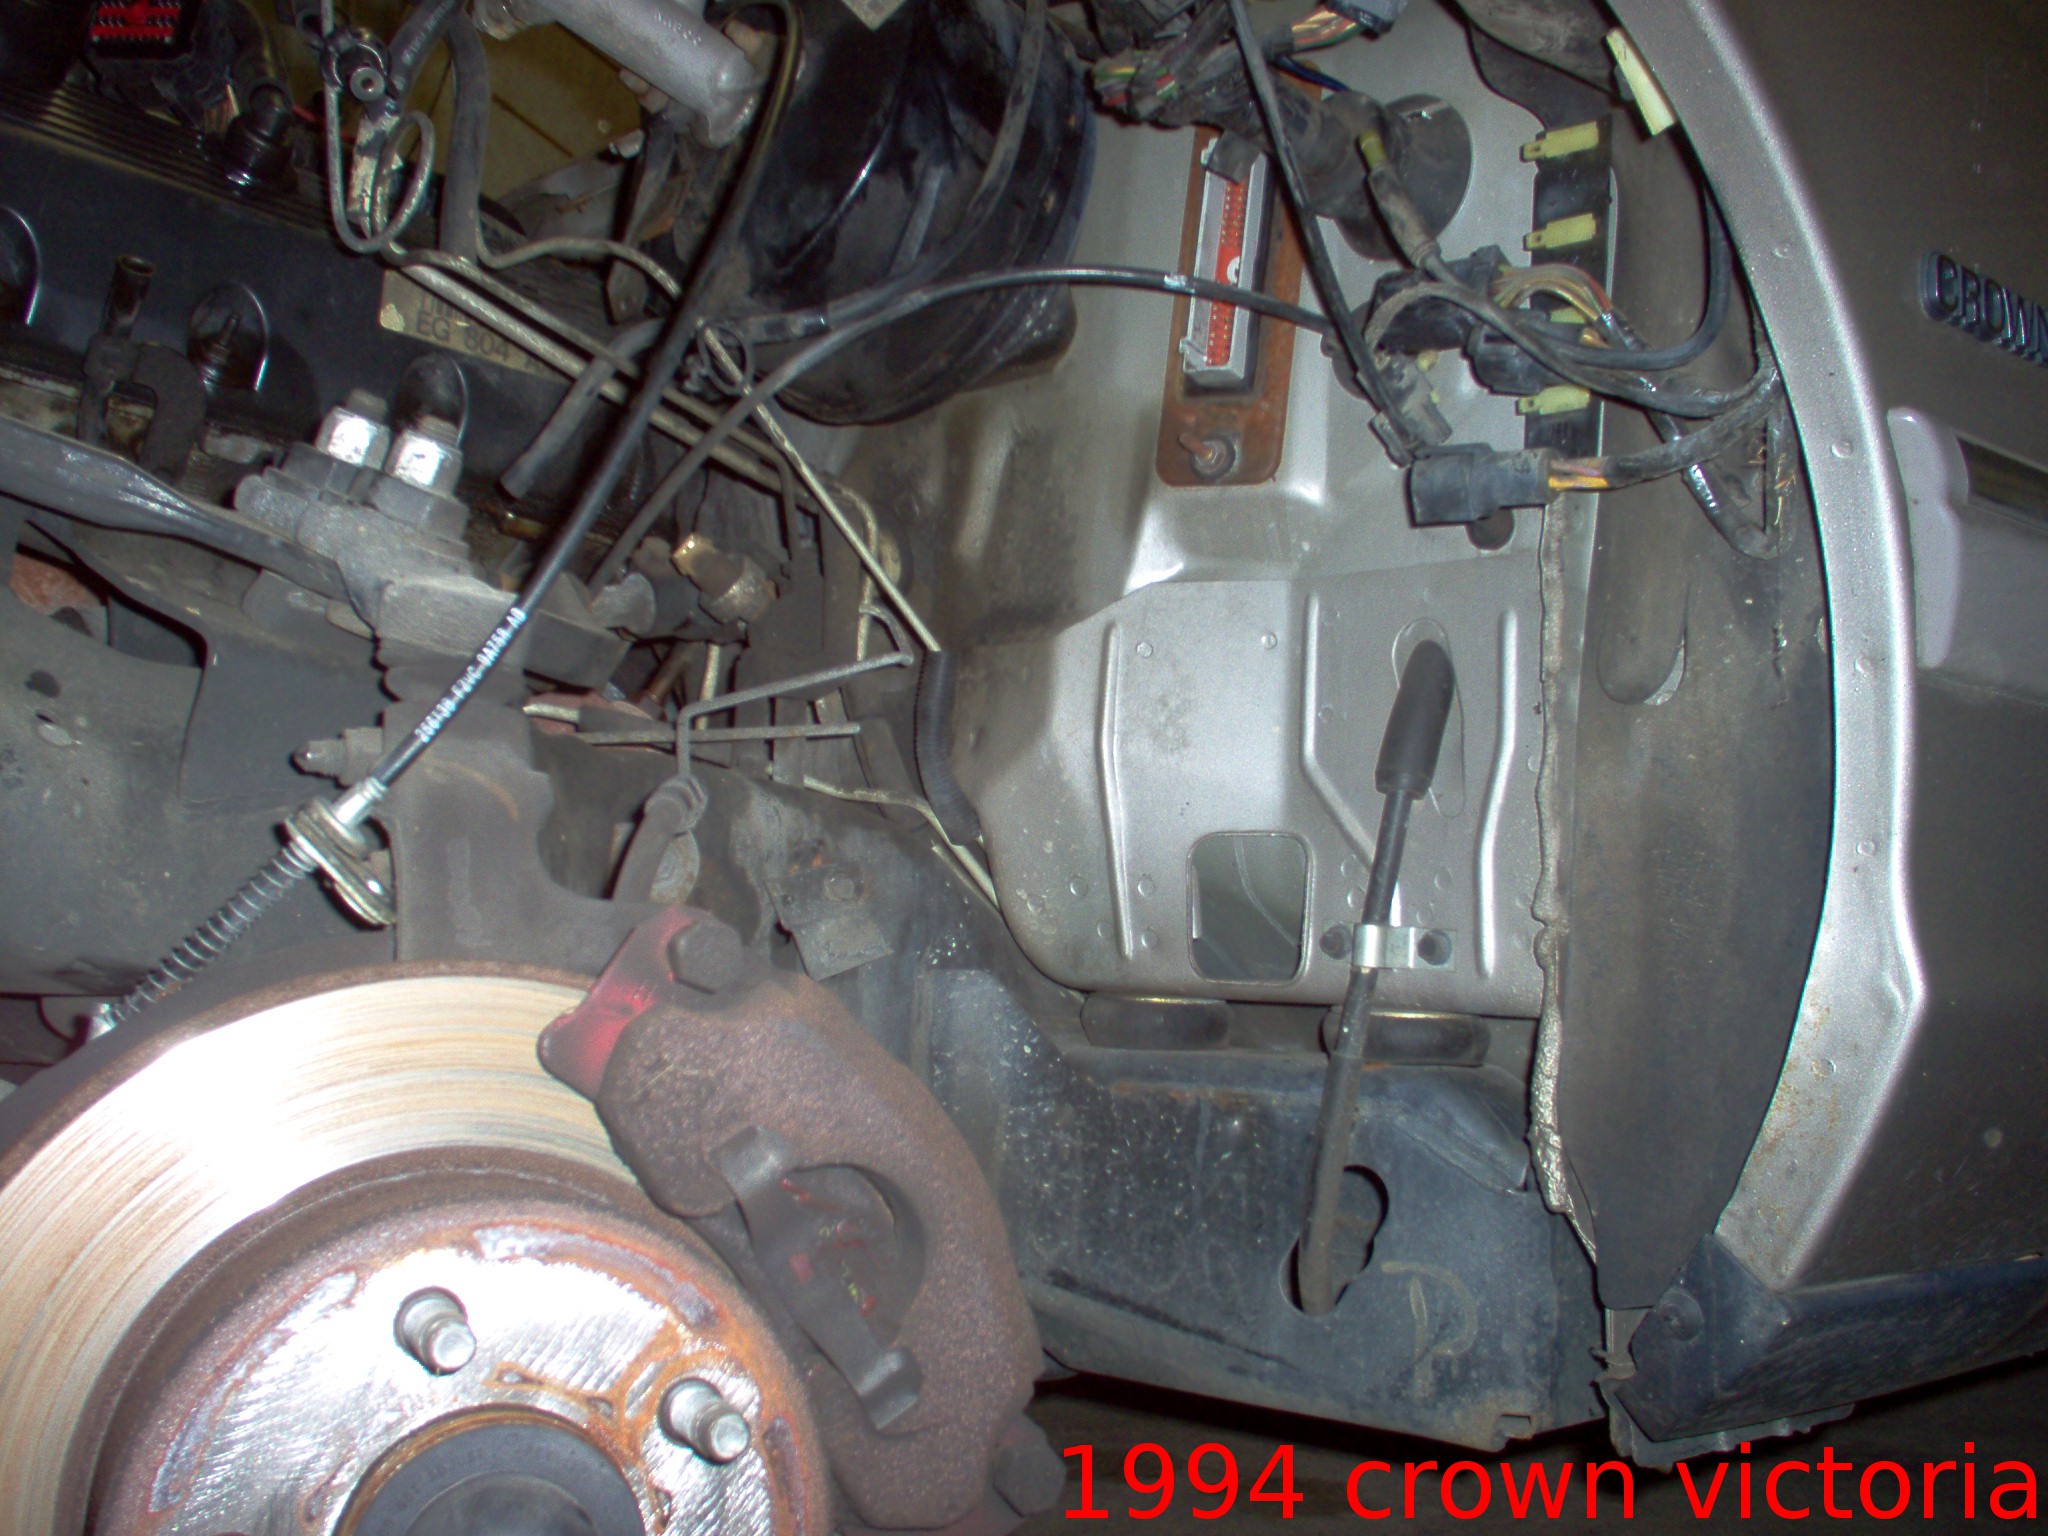 2002 Ford crown victoria vacuum leak